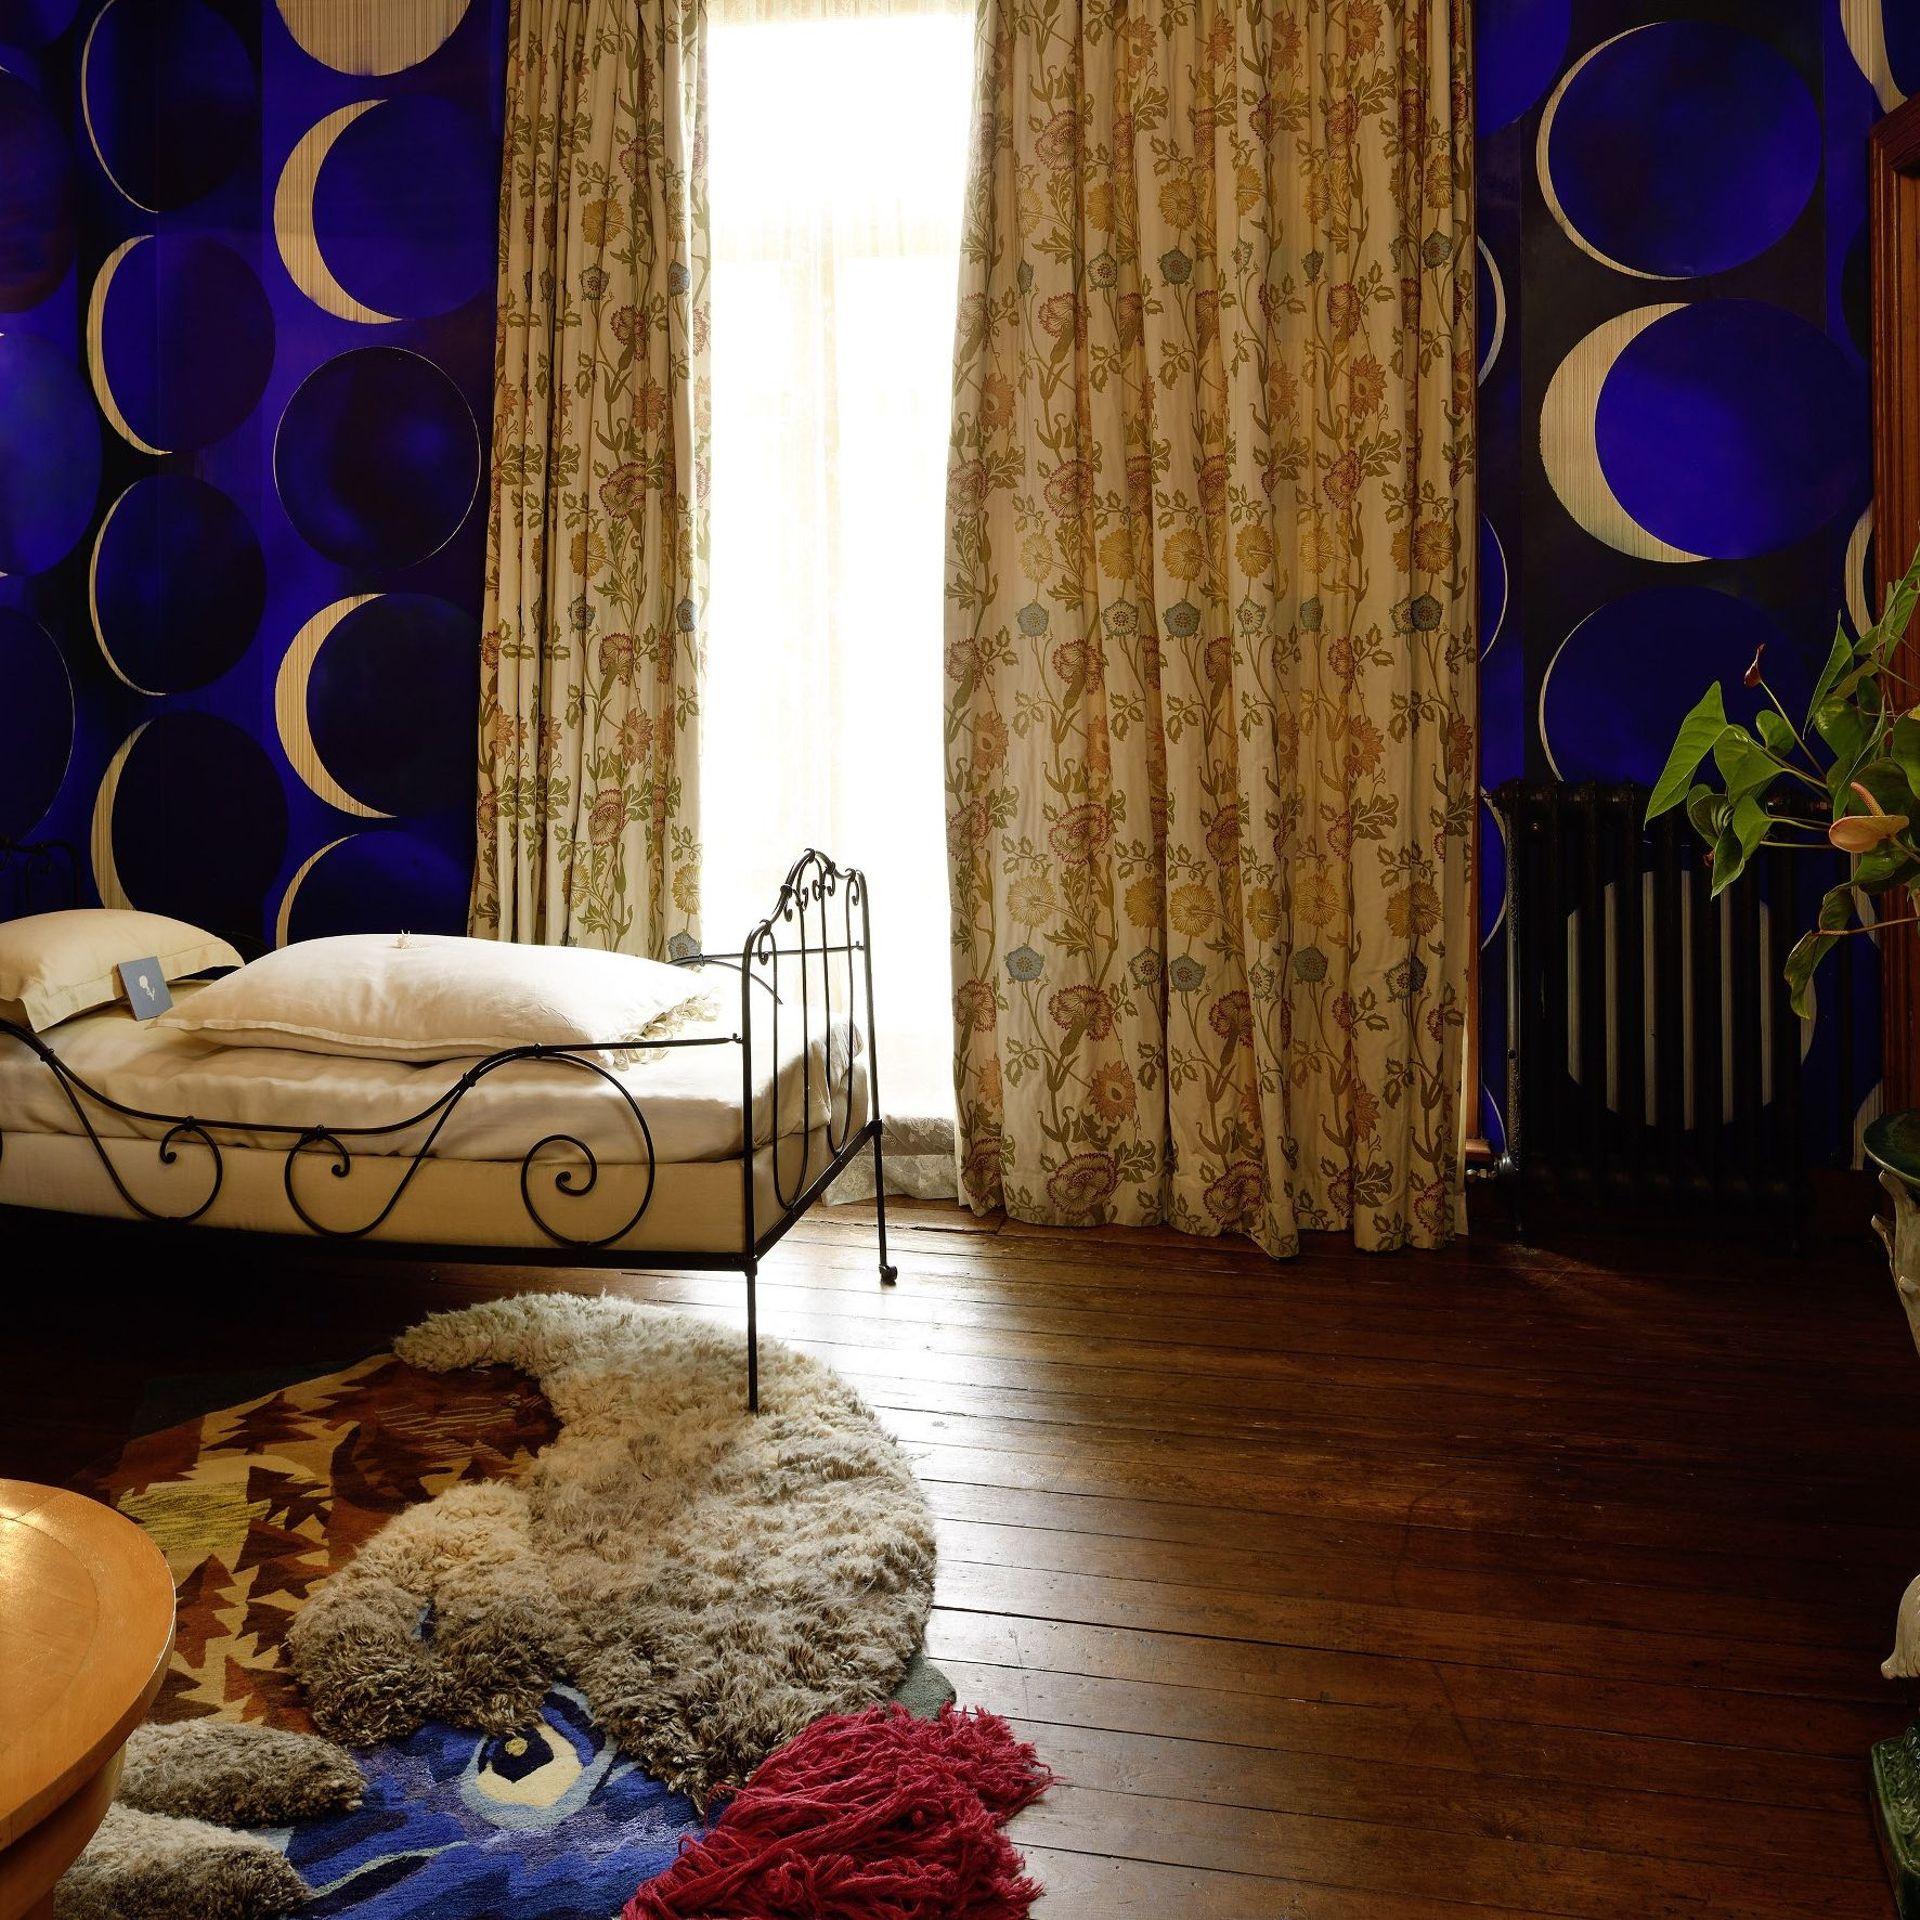 La chambre à coucher de Simone Horta par Christophe Hefti.